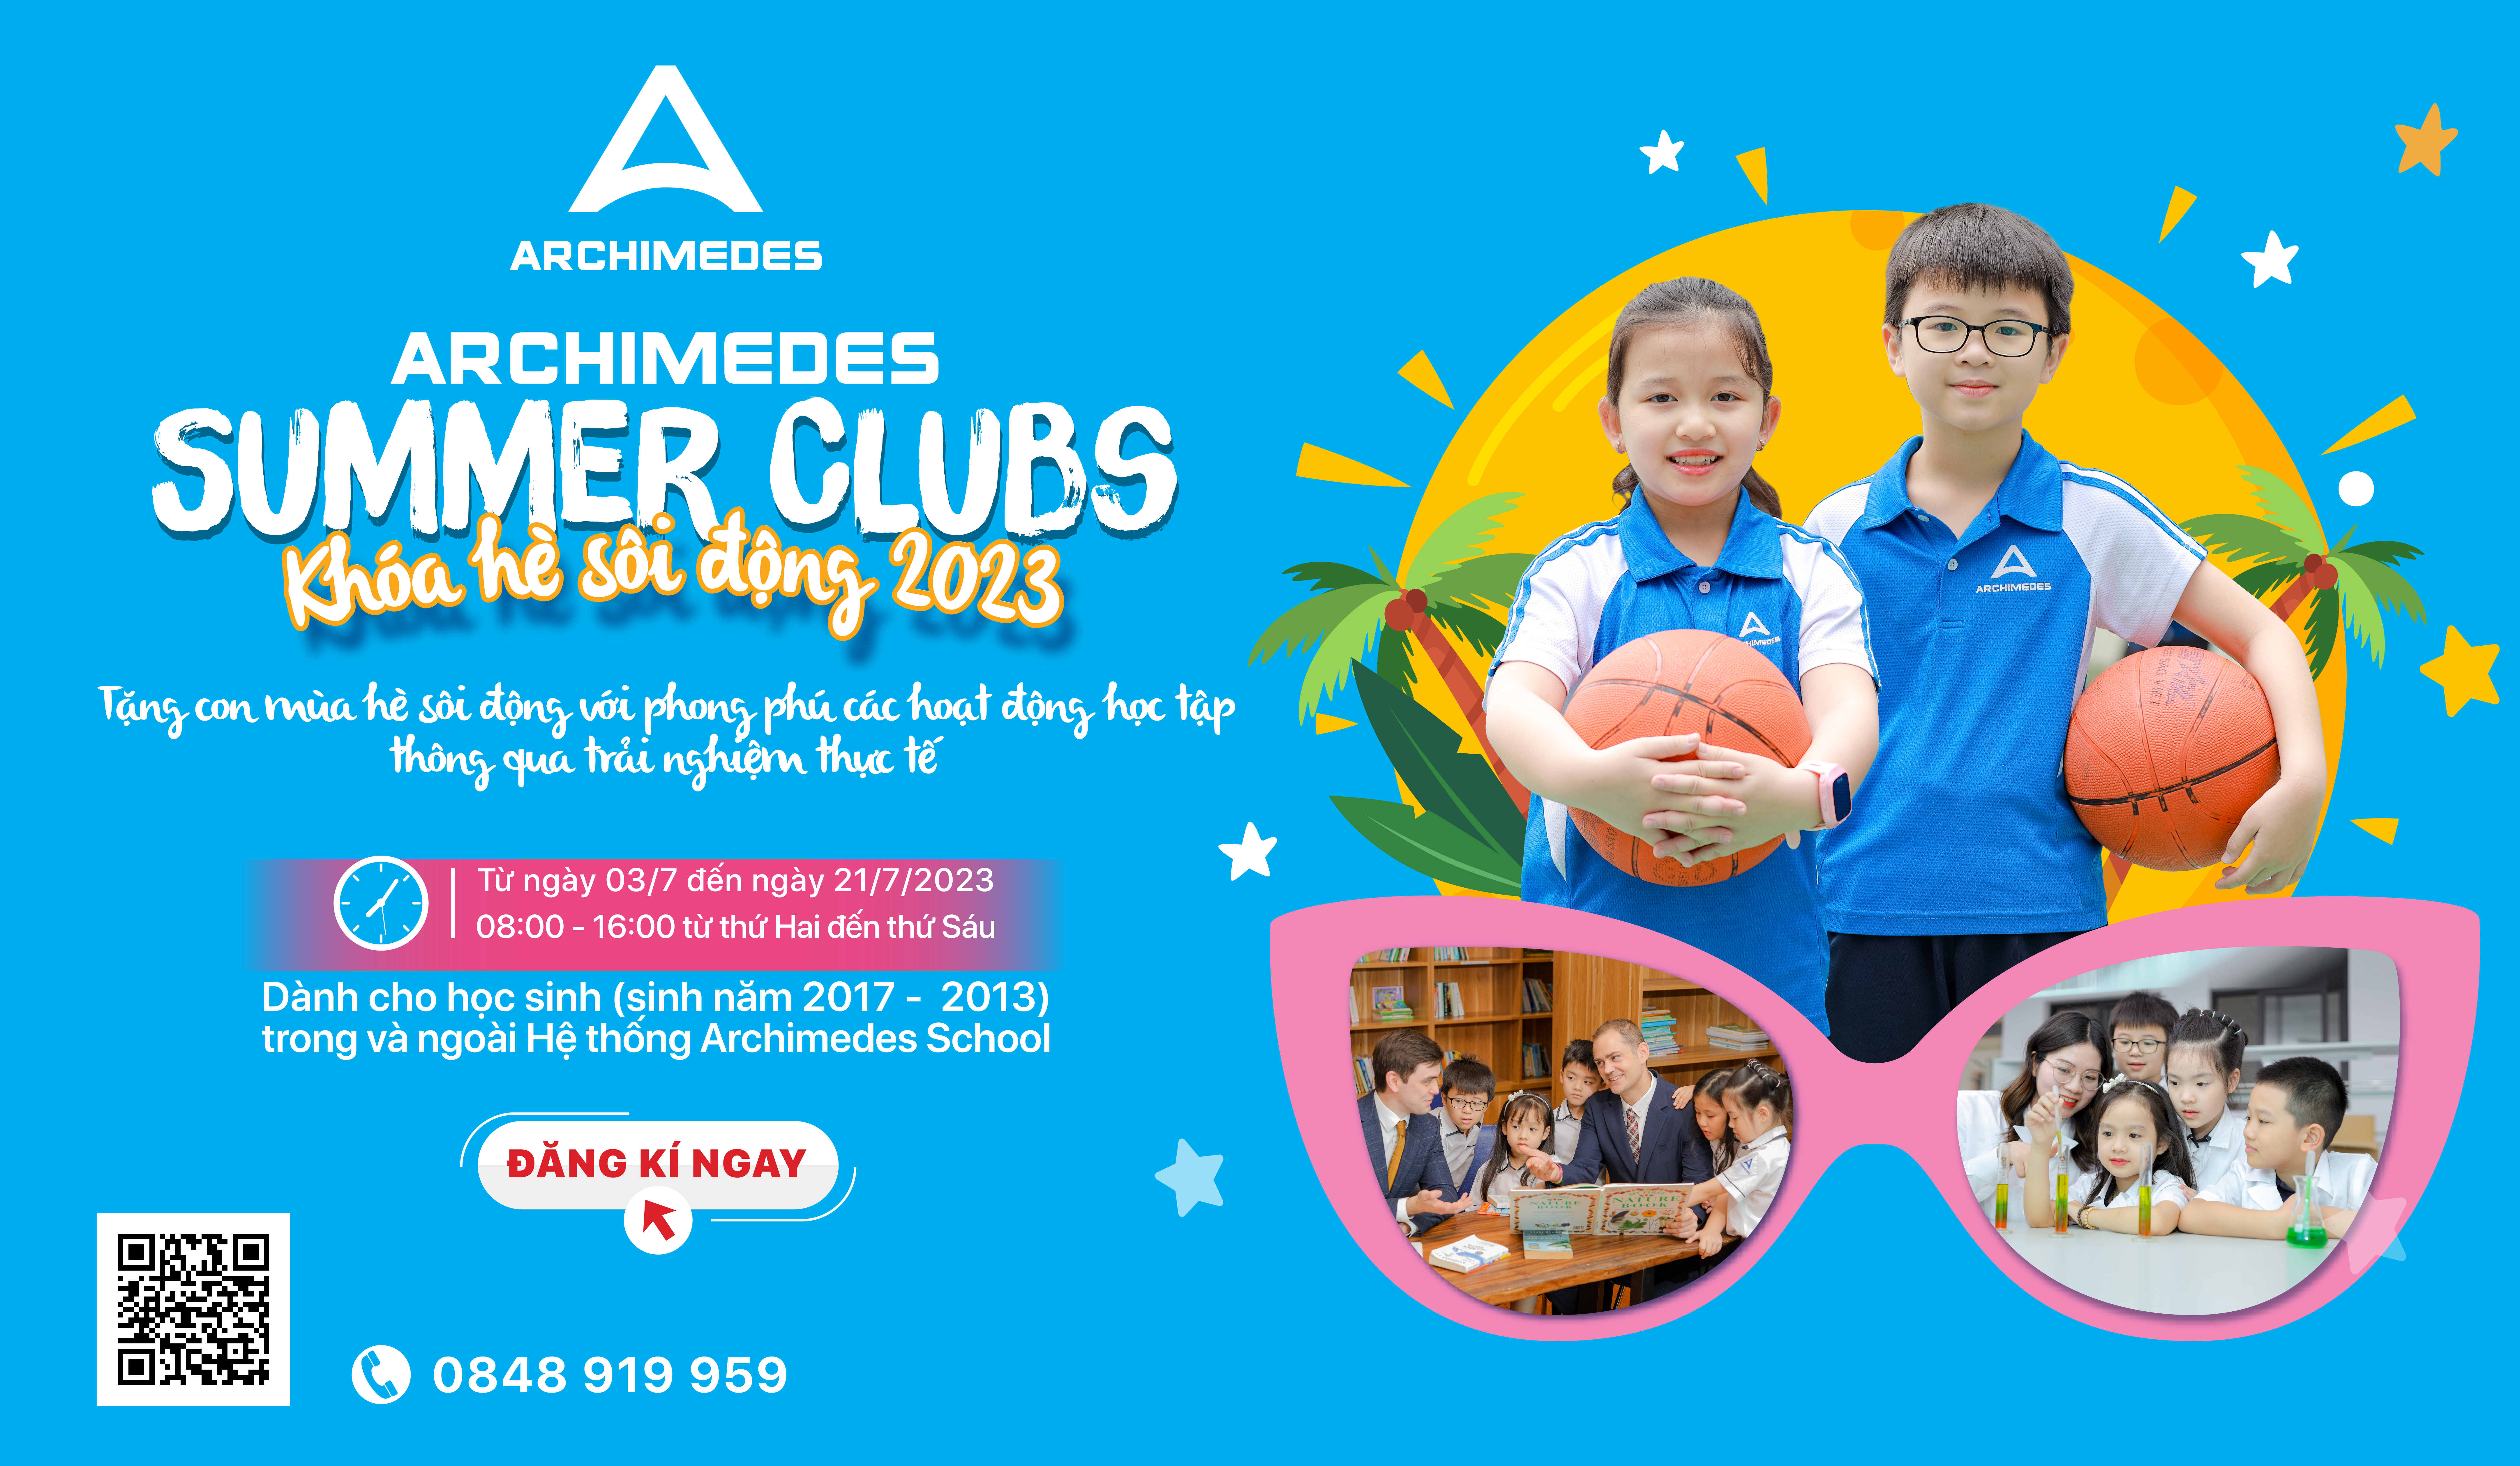 [ADAS] Archimedes Summer Clubs 2023: Tặng con mùa hè sôi động